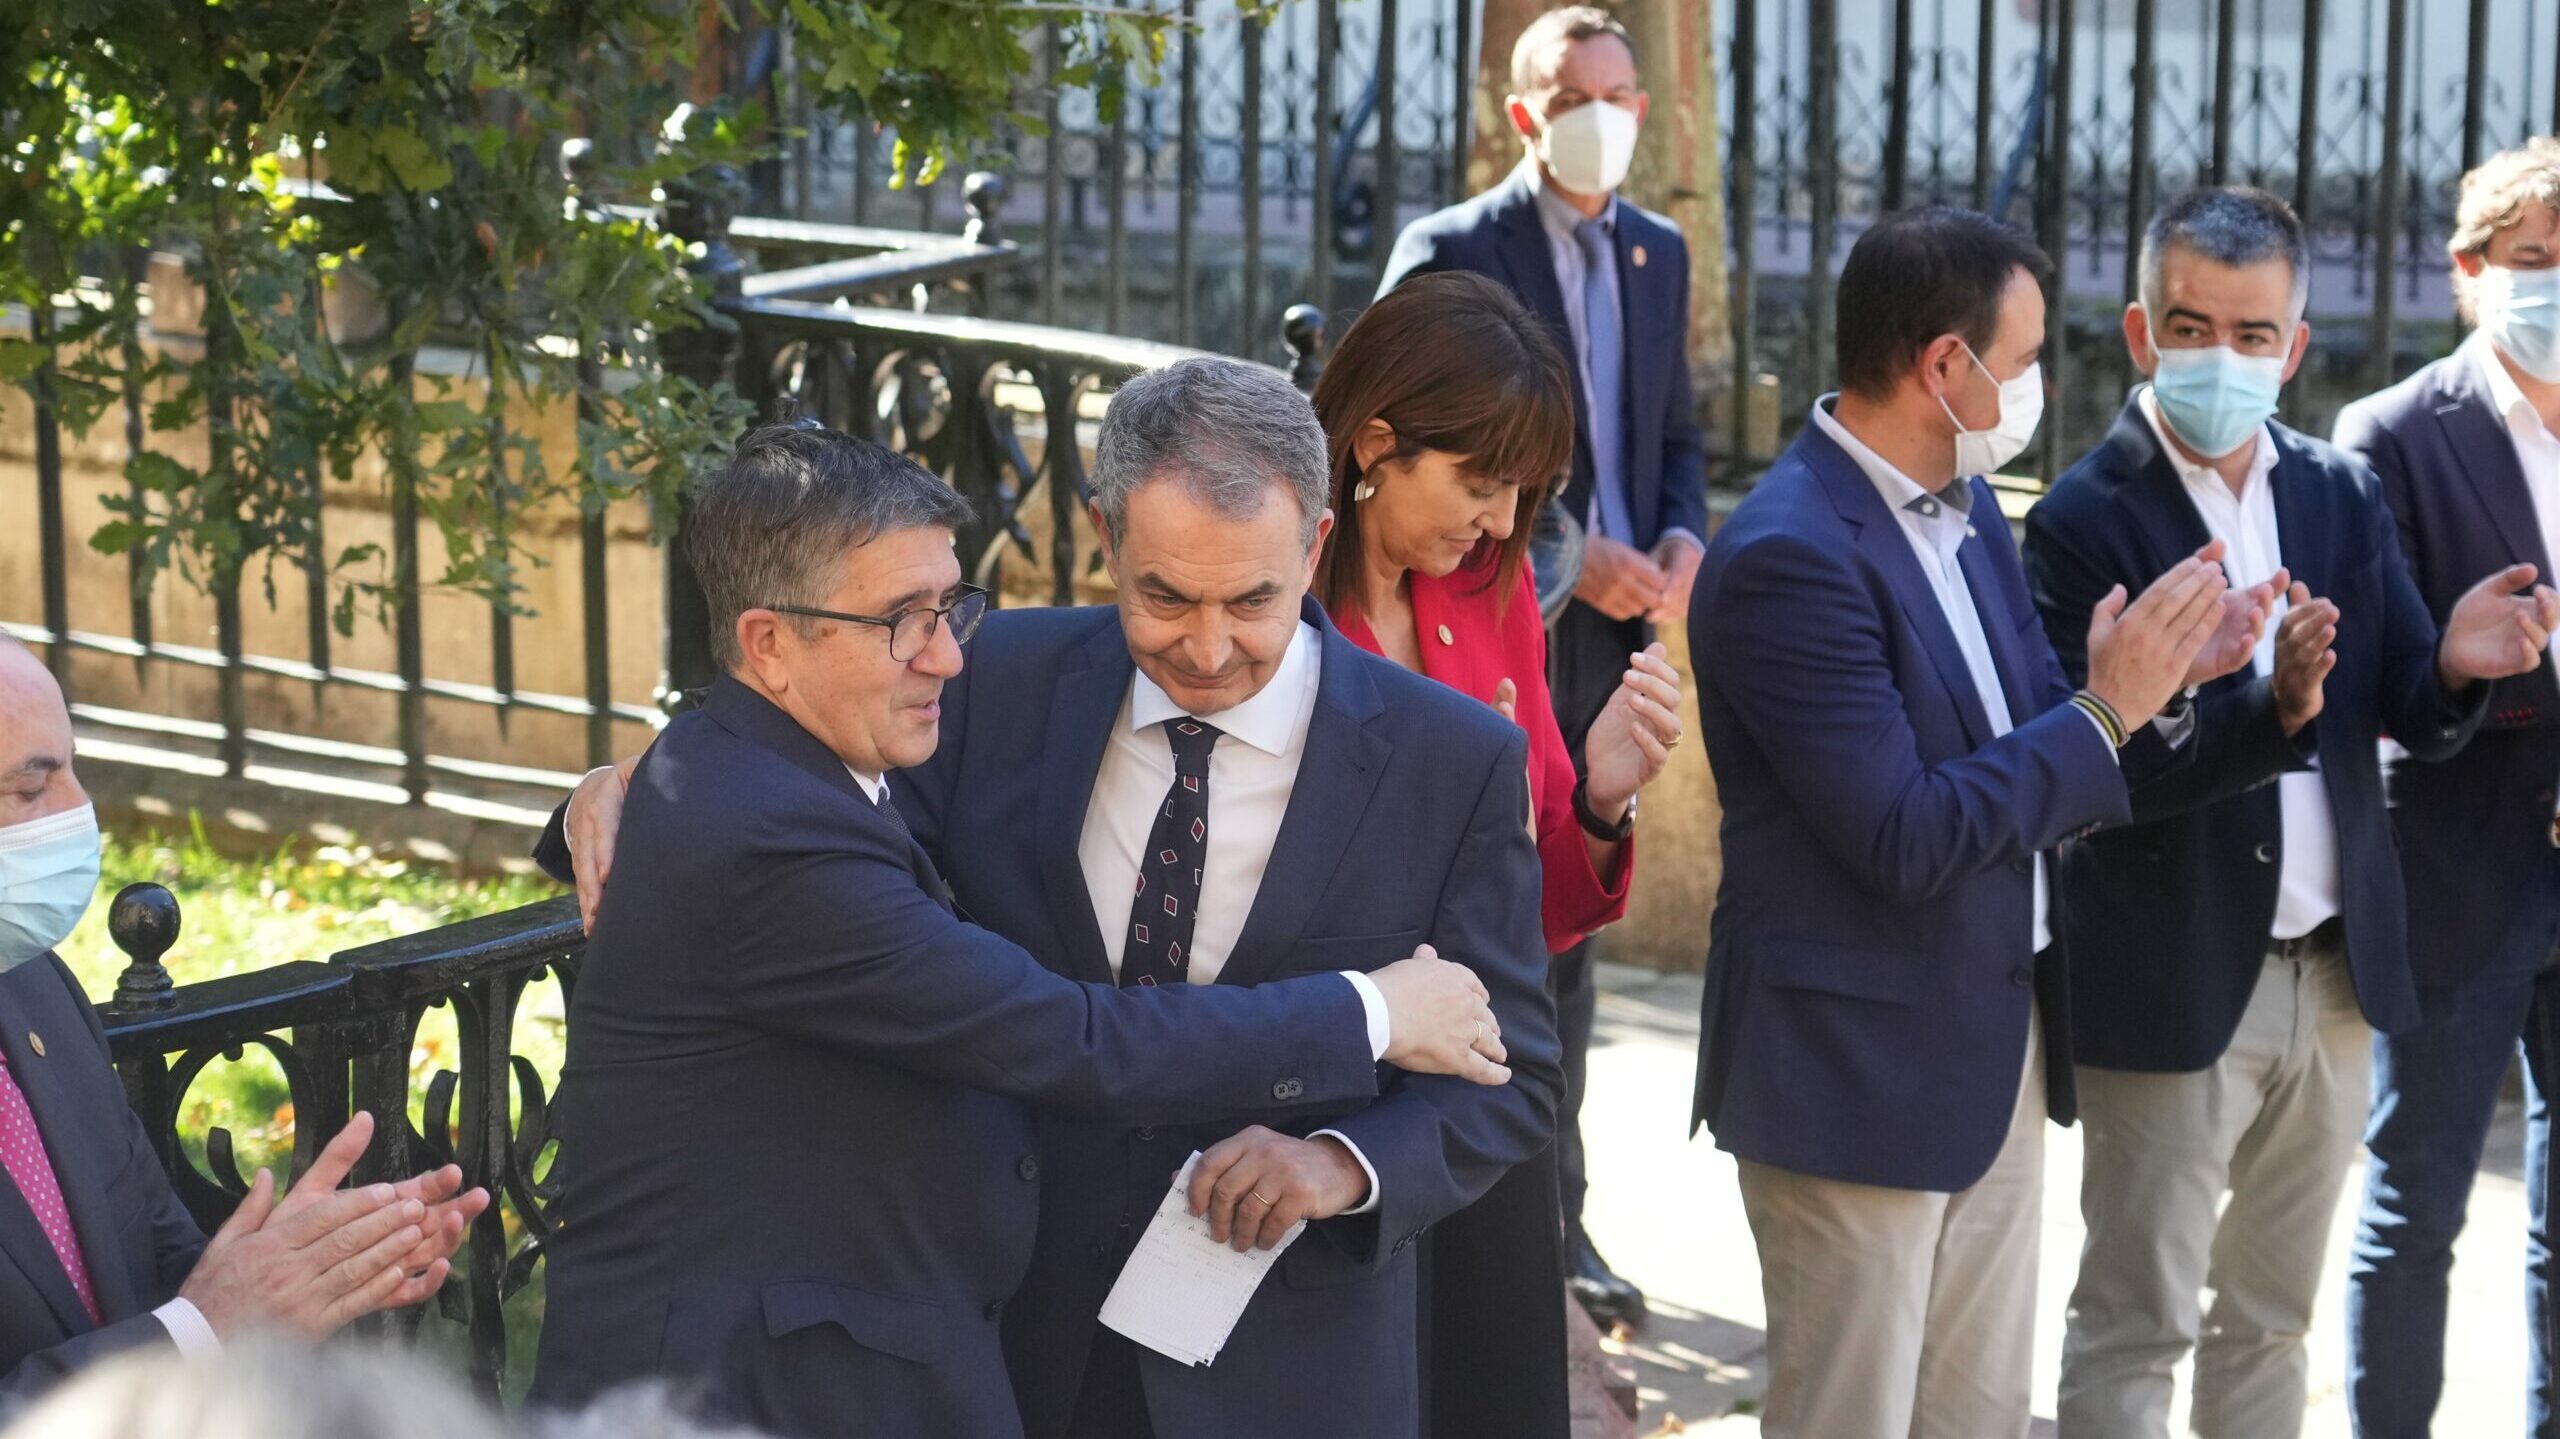 Zapatero en el décimo aniversario del fin de ETA: "Somos ya una democracia sin terrorismo, pero no sin memoria"